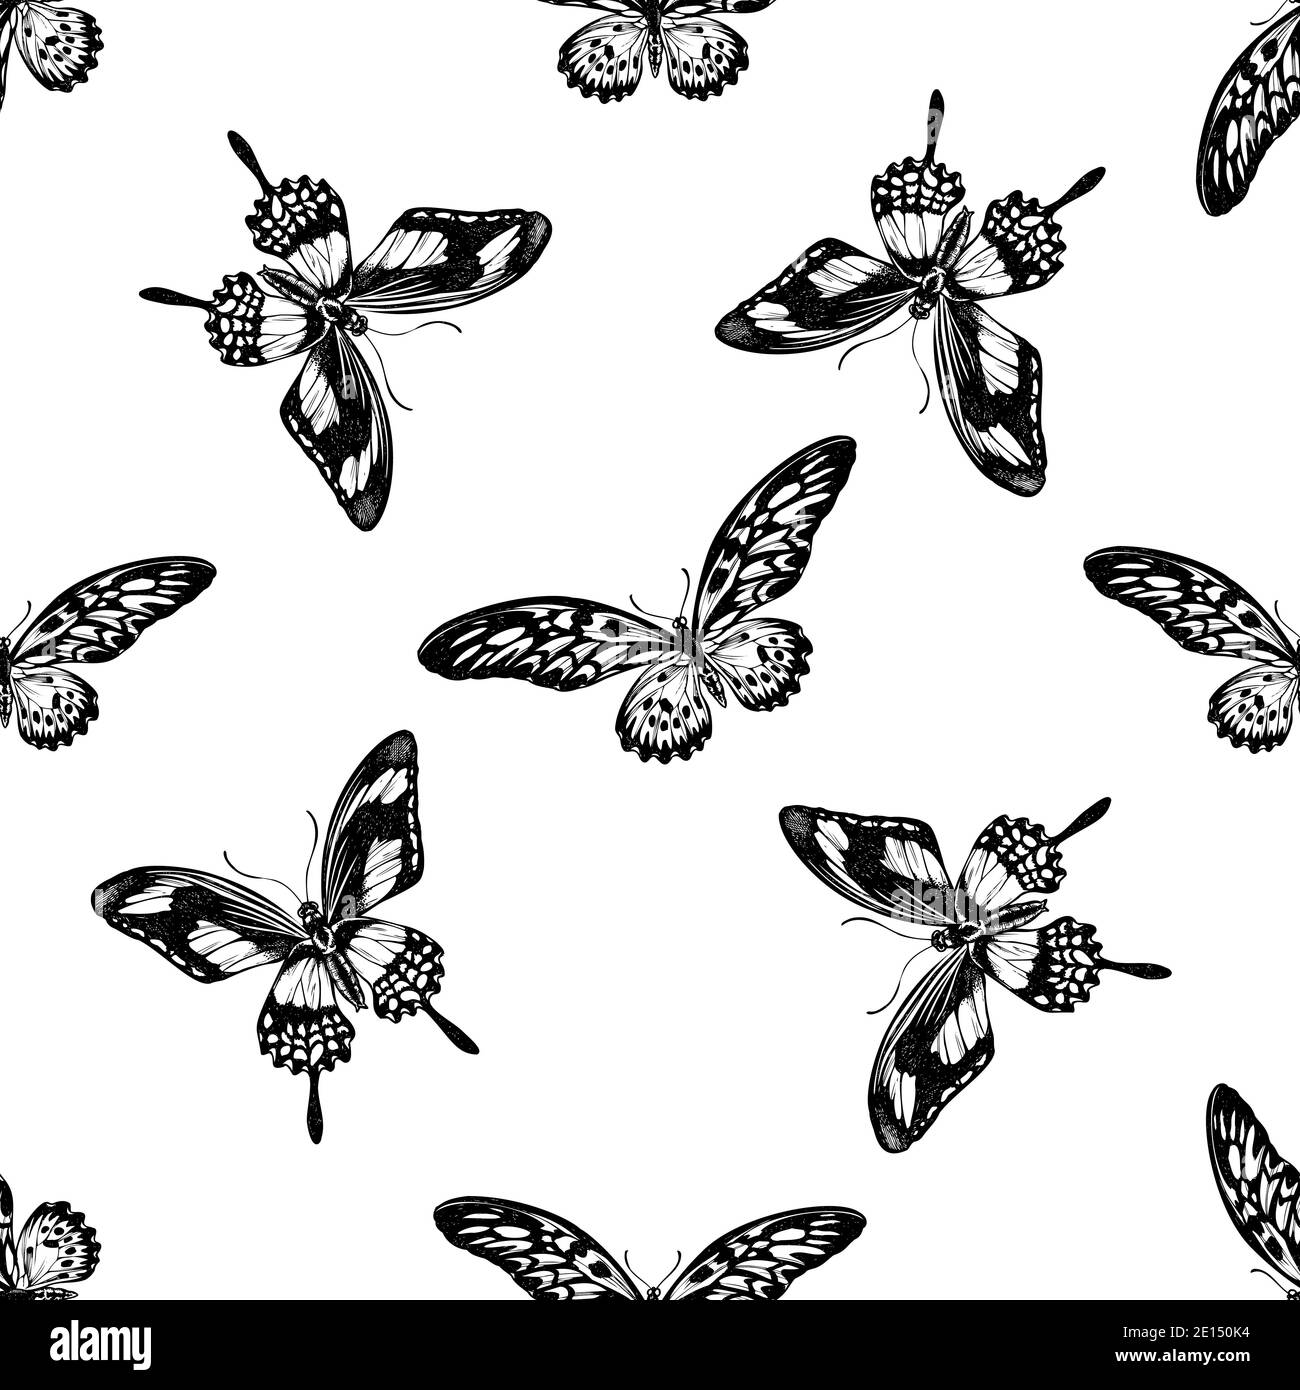 Motif sans couture avec queue d'allowtail africaine noire et blanche, papillio torquatus Illustration de Vecteur